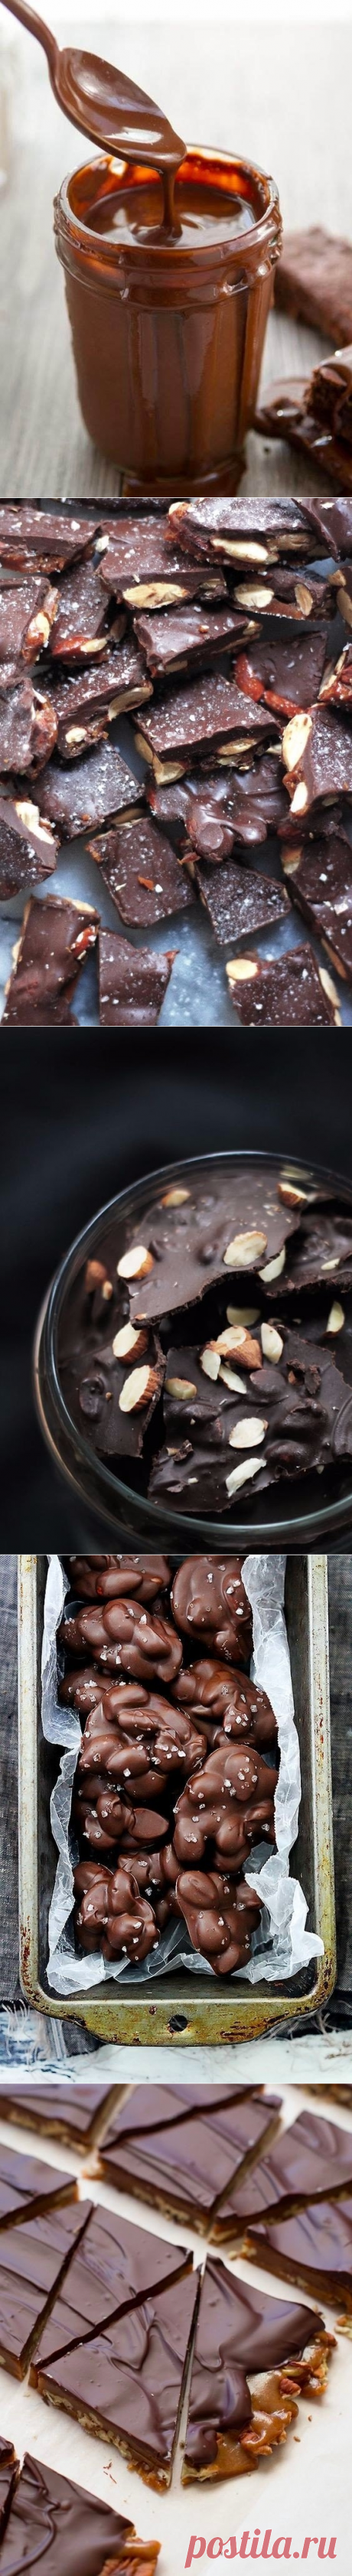 Как приготовить шоколад домашний без красителей и консервантов - рецепт, ингредиенты и фотографии